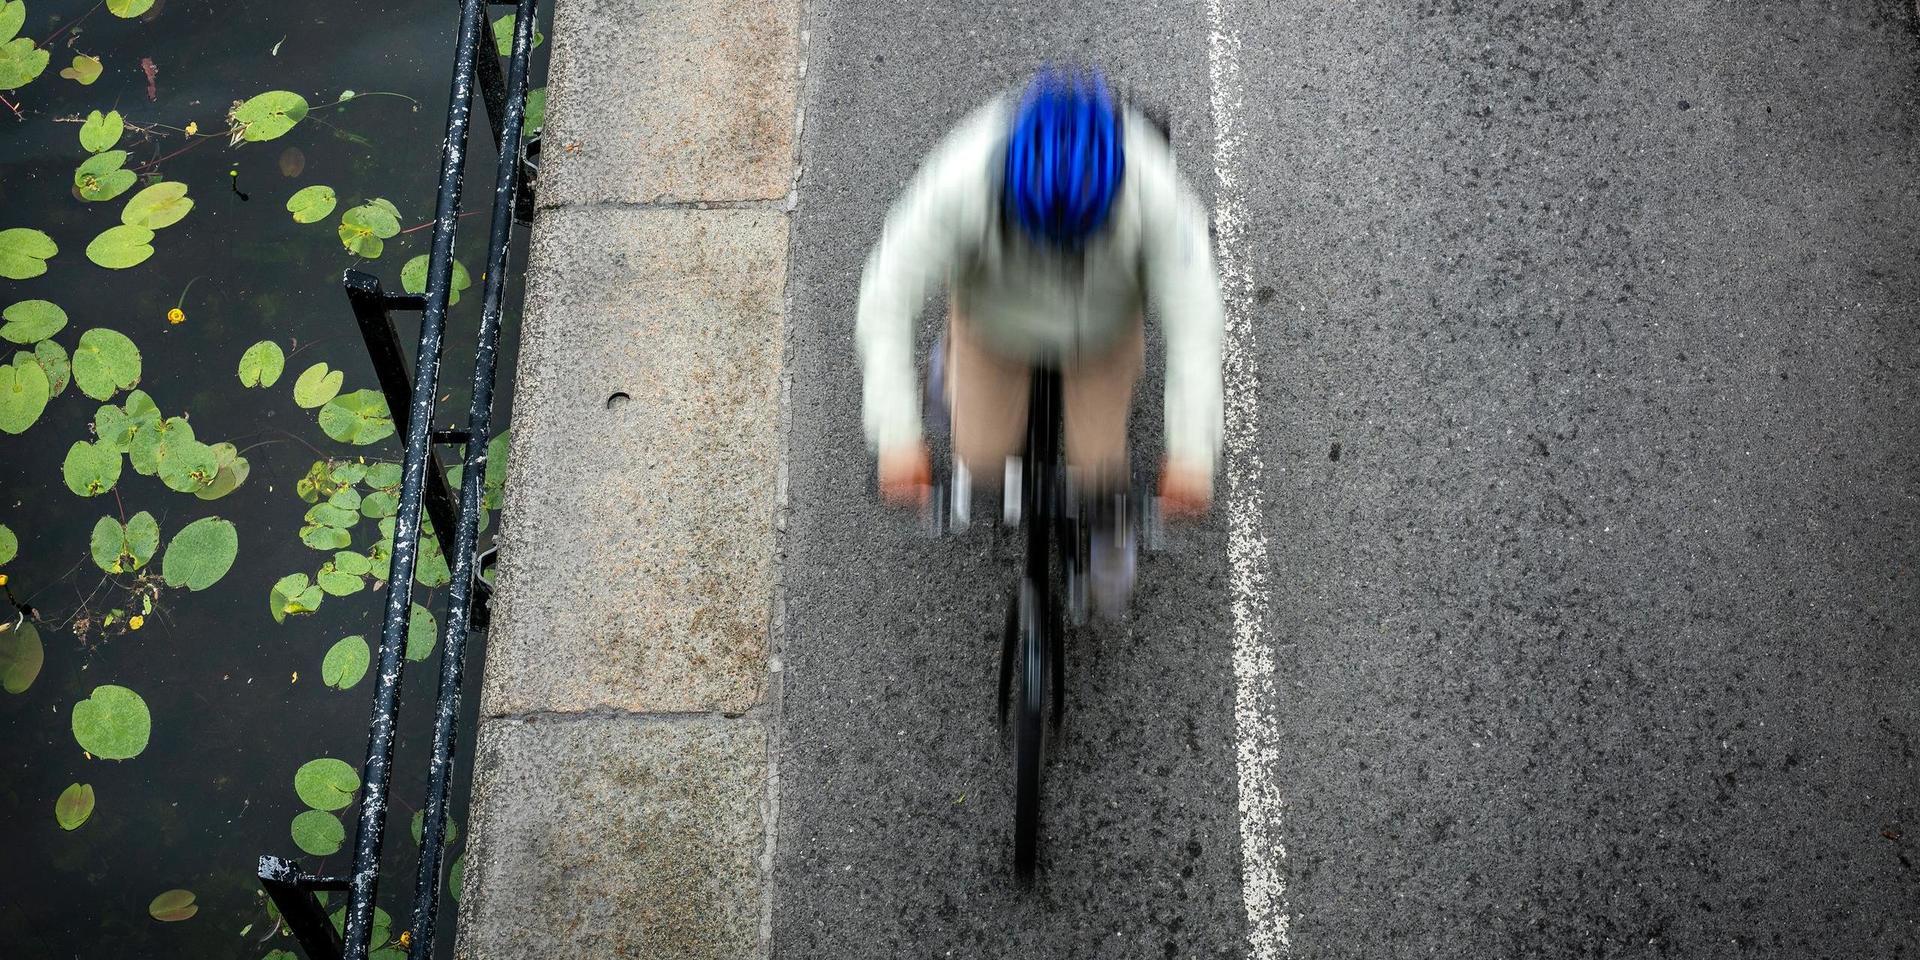 Det är viktigt att följa trafikreglerna när man cyklar, menar insändarskribenten.